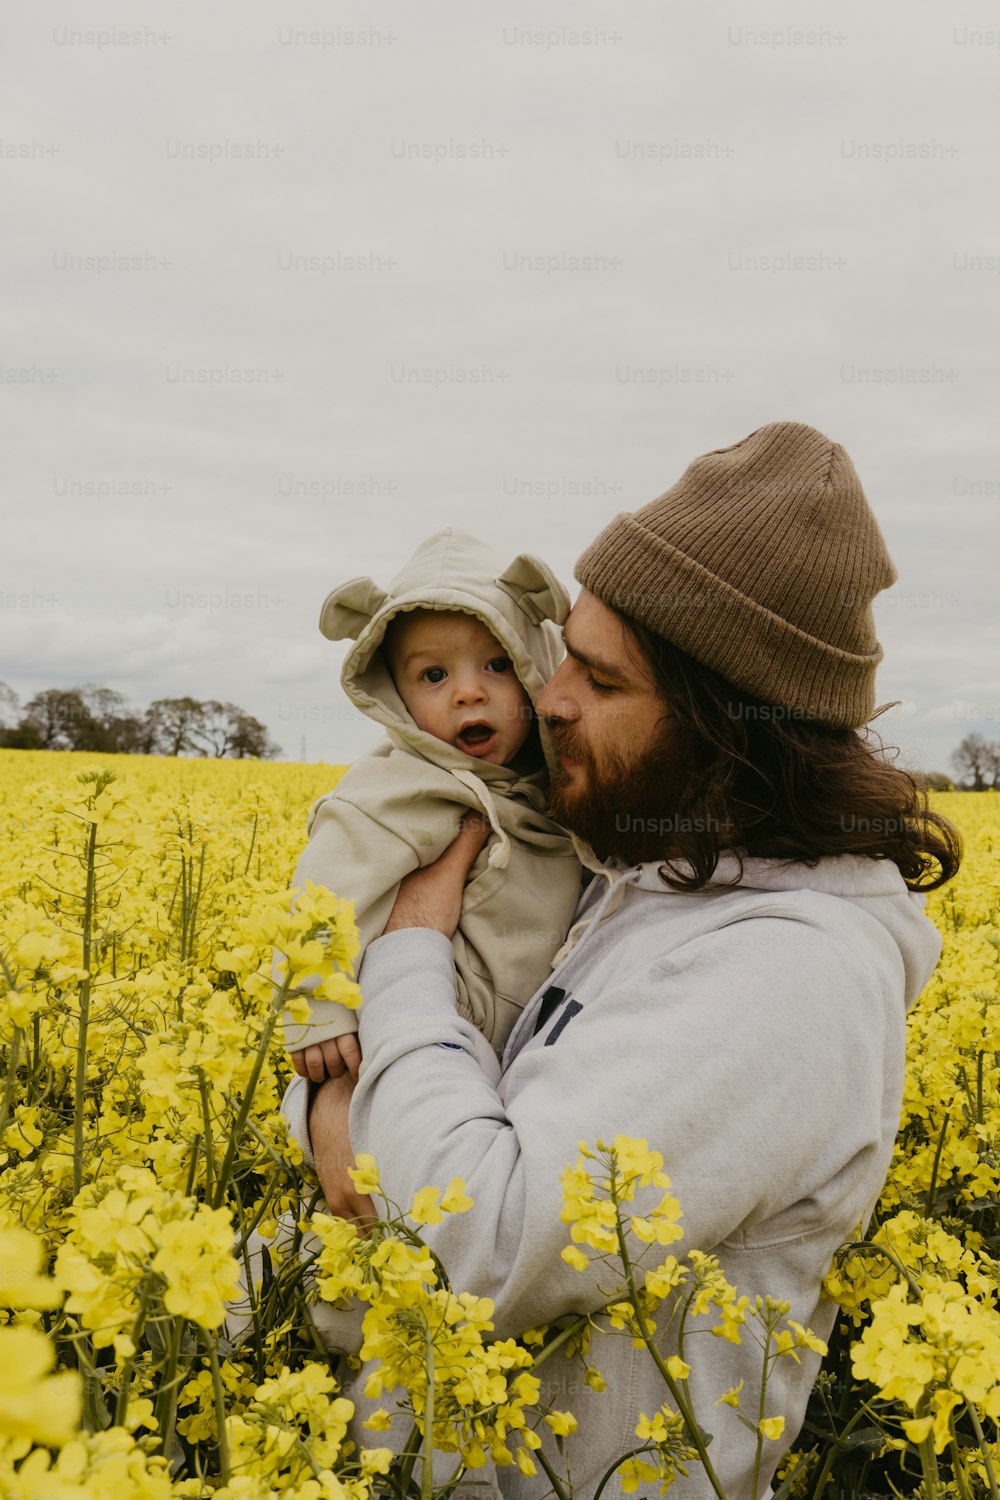 Un uomo che tiene un bambino in un campo di fiori gialli